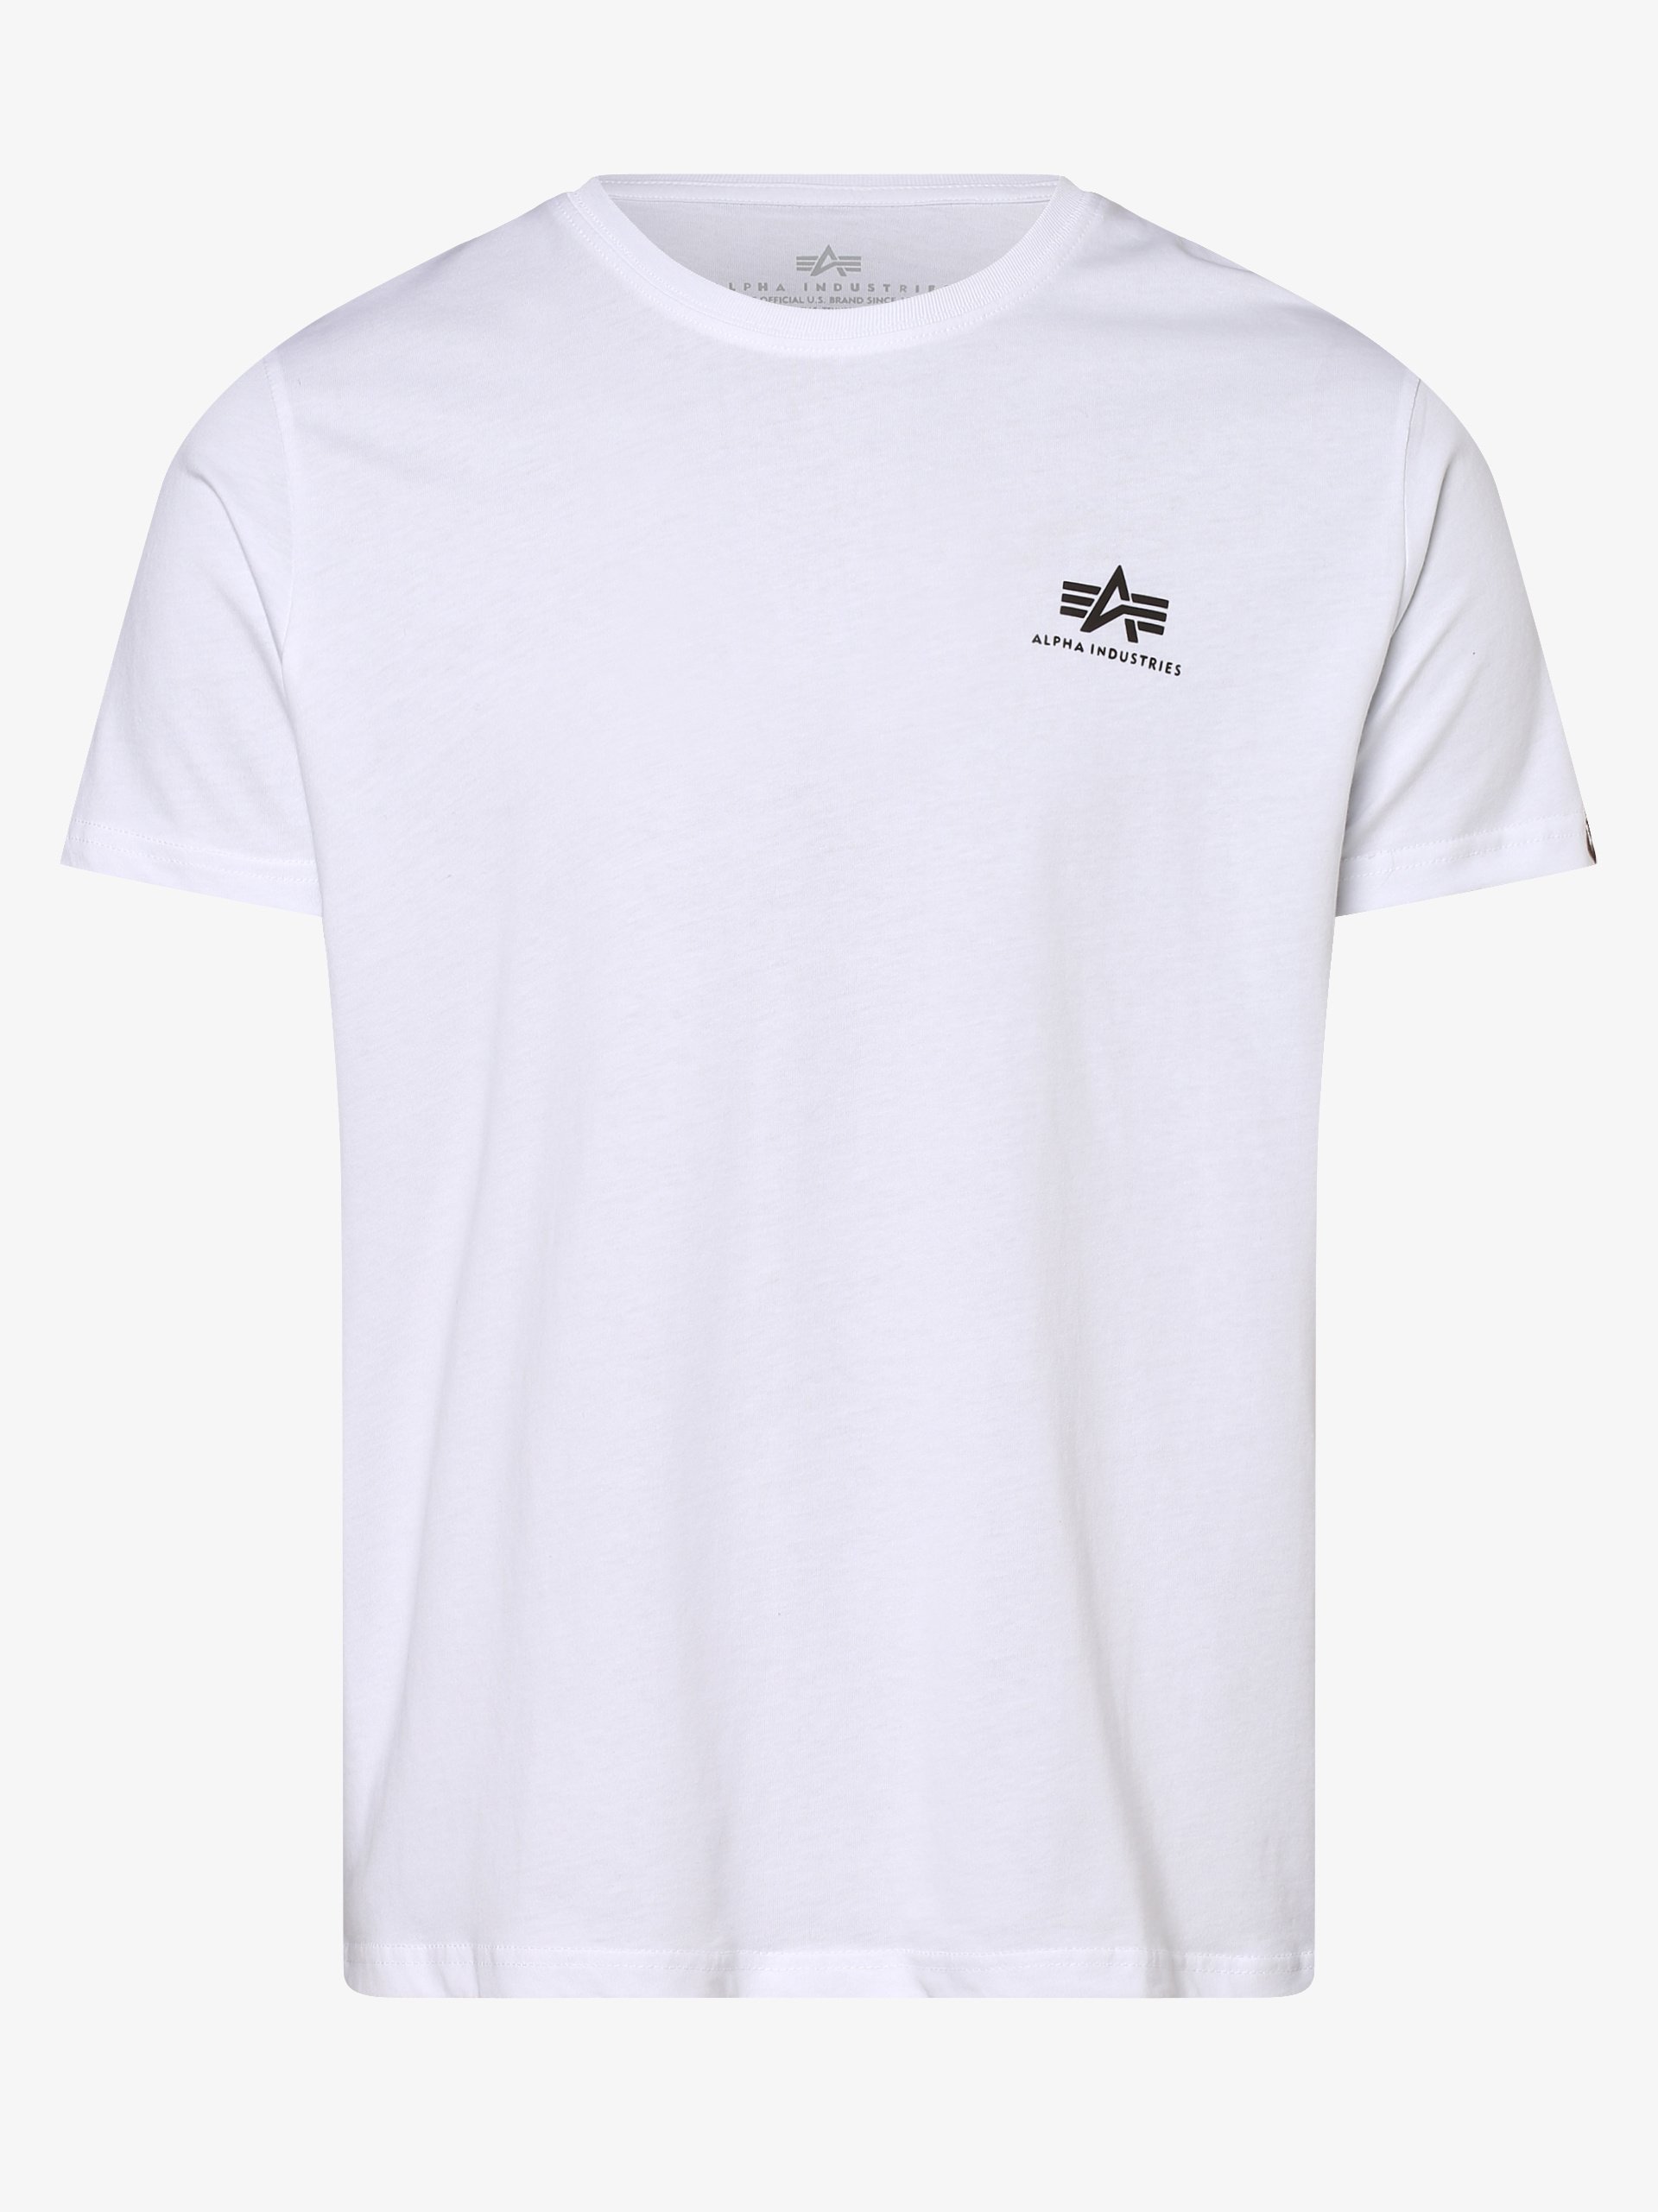 Herren online Alpha T-Shirt Industries kaufen